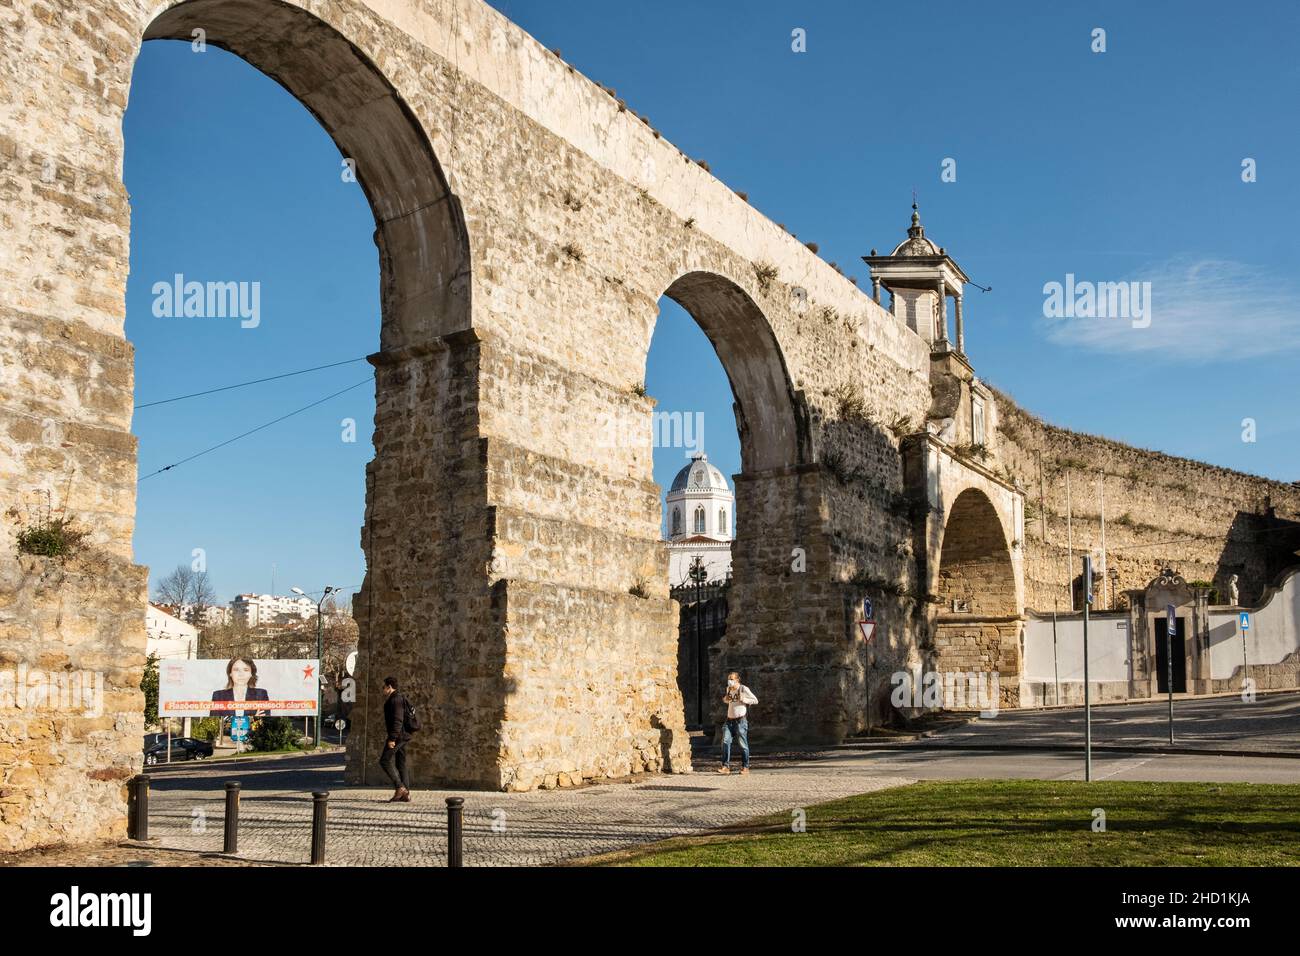 L'acquedotto di São Sebastião a Coimbra, Portogallo, costruito intorno al 1570. Conosciuto anche come "arcos do jardim", si trova accanto al giardino botanico della città Foto Stock